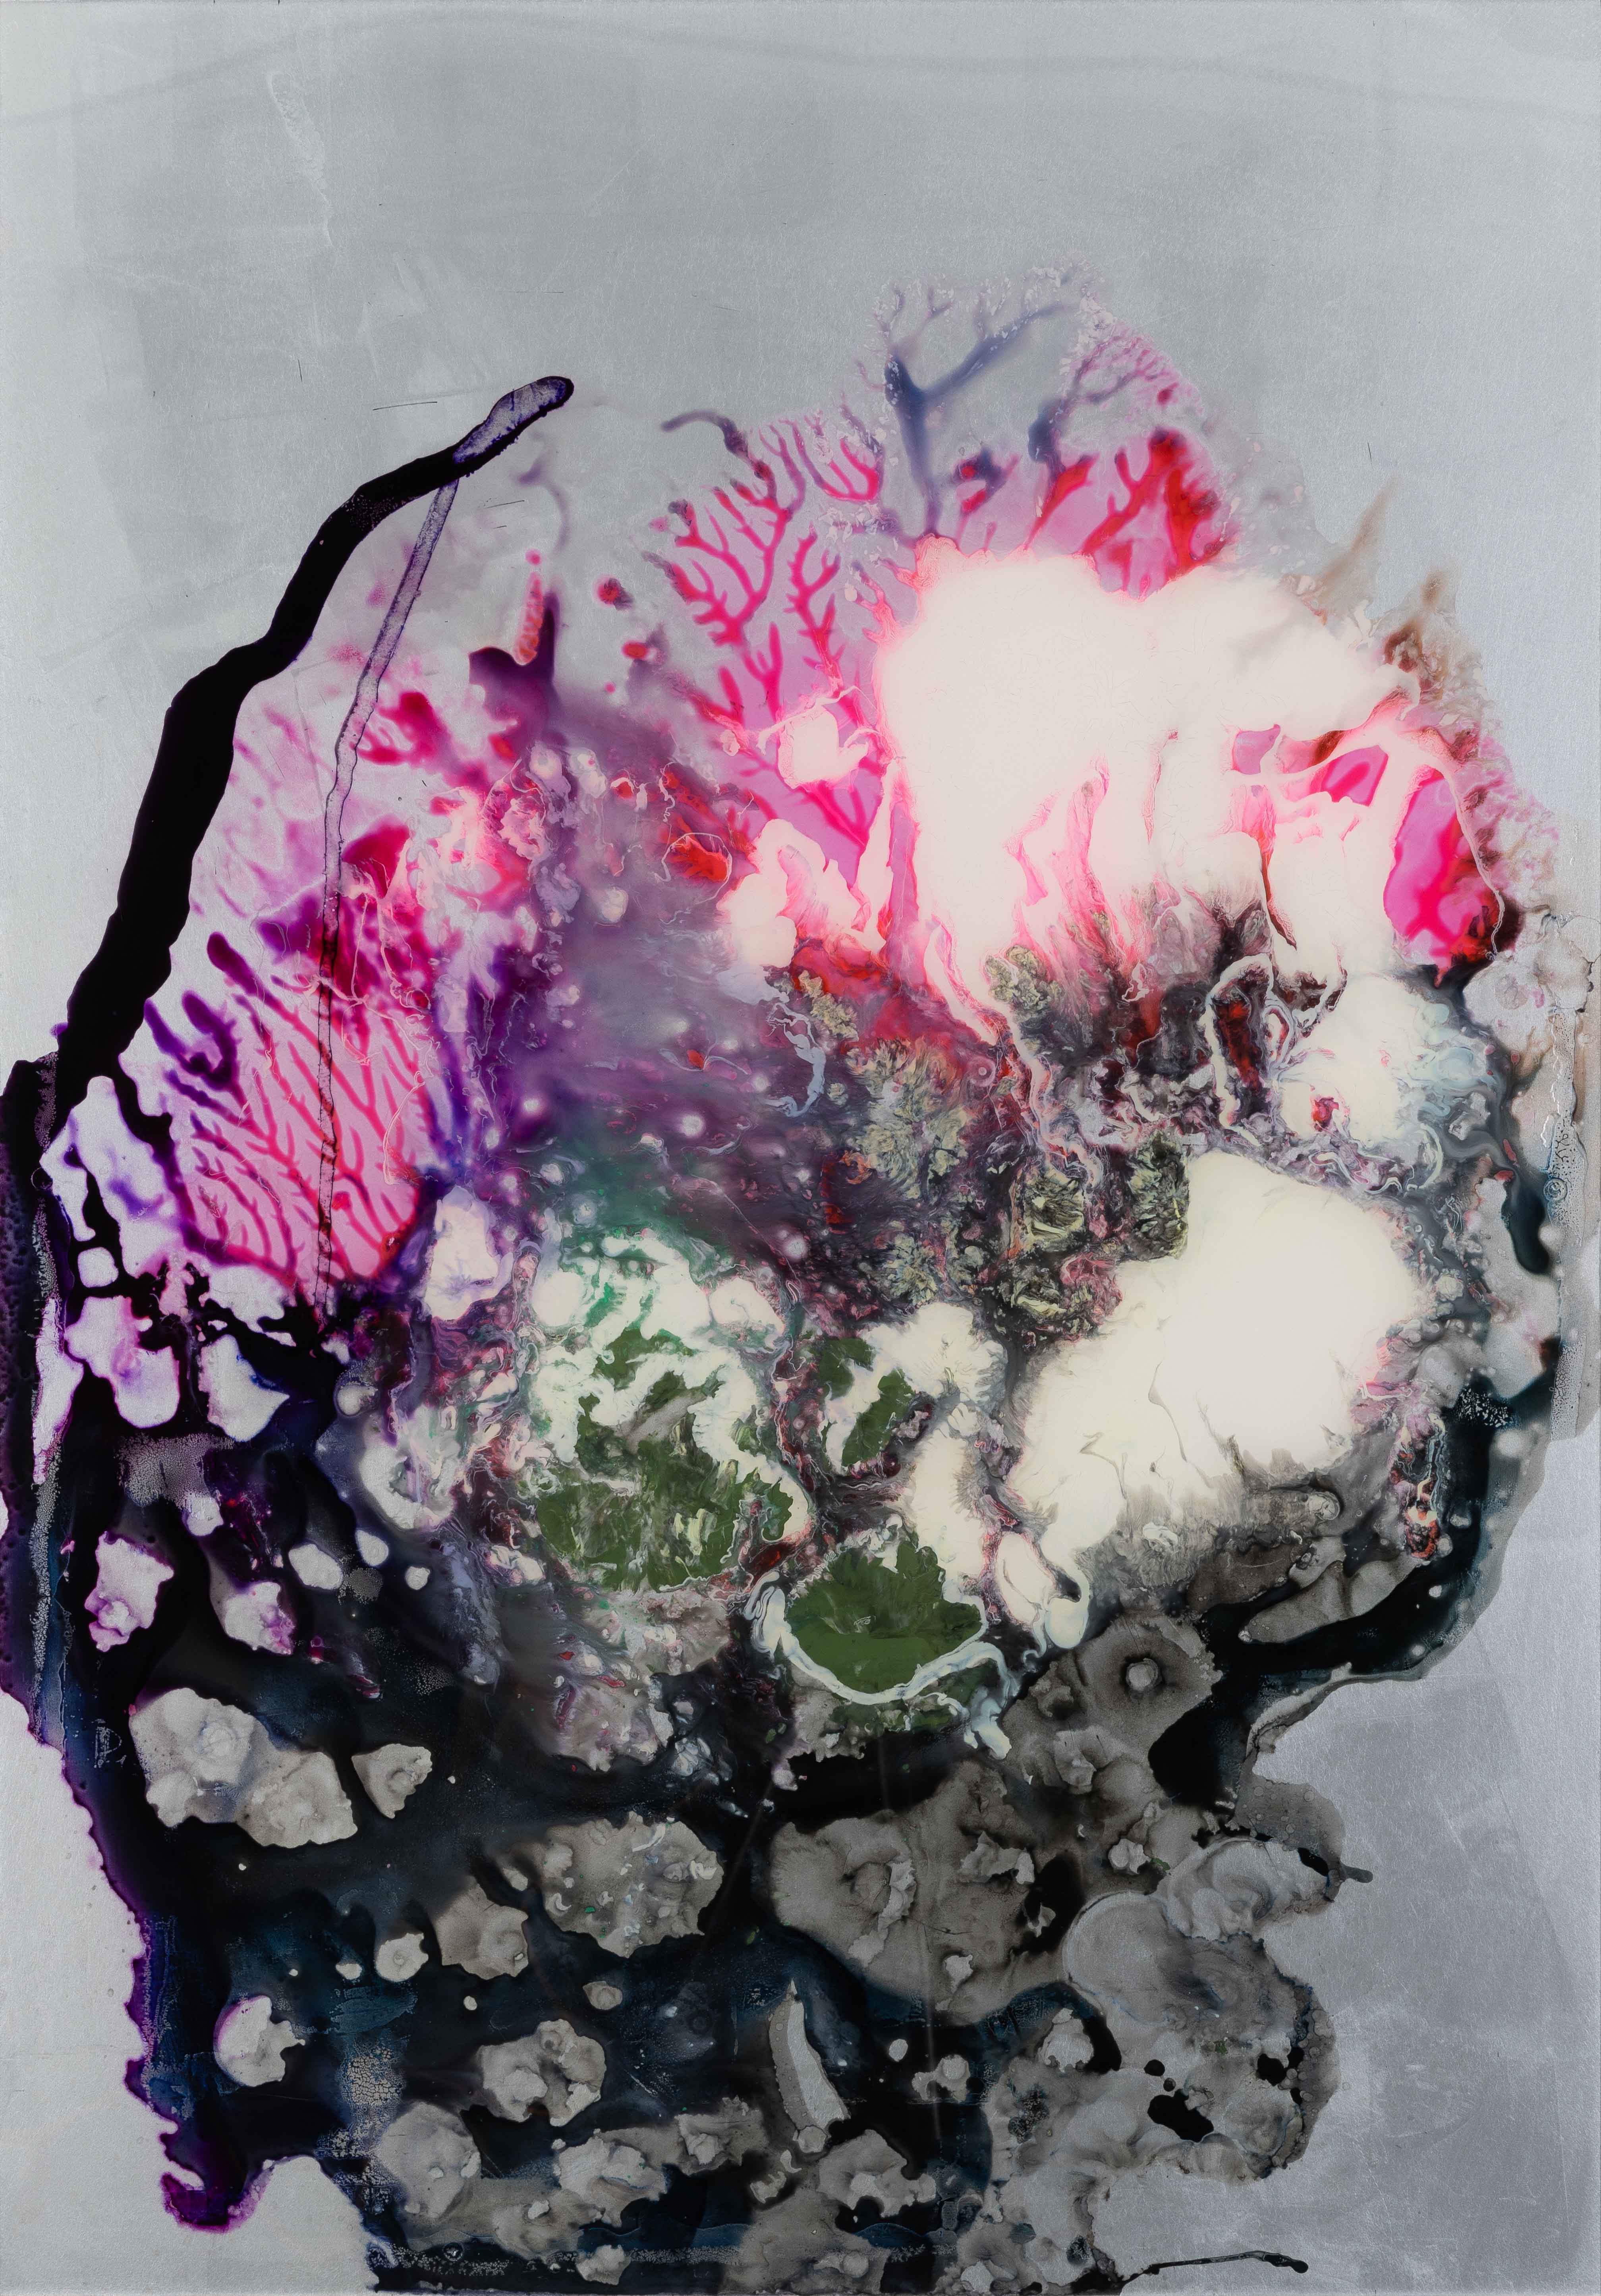 Ein Werk von Michael Burges mit einem Farbspiel von Lila, pink, schwarz und grau